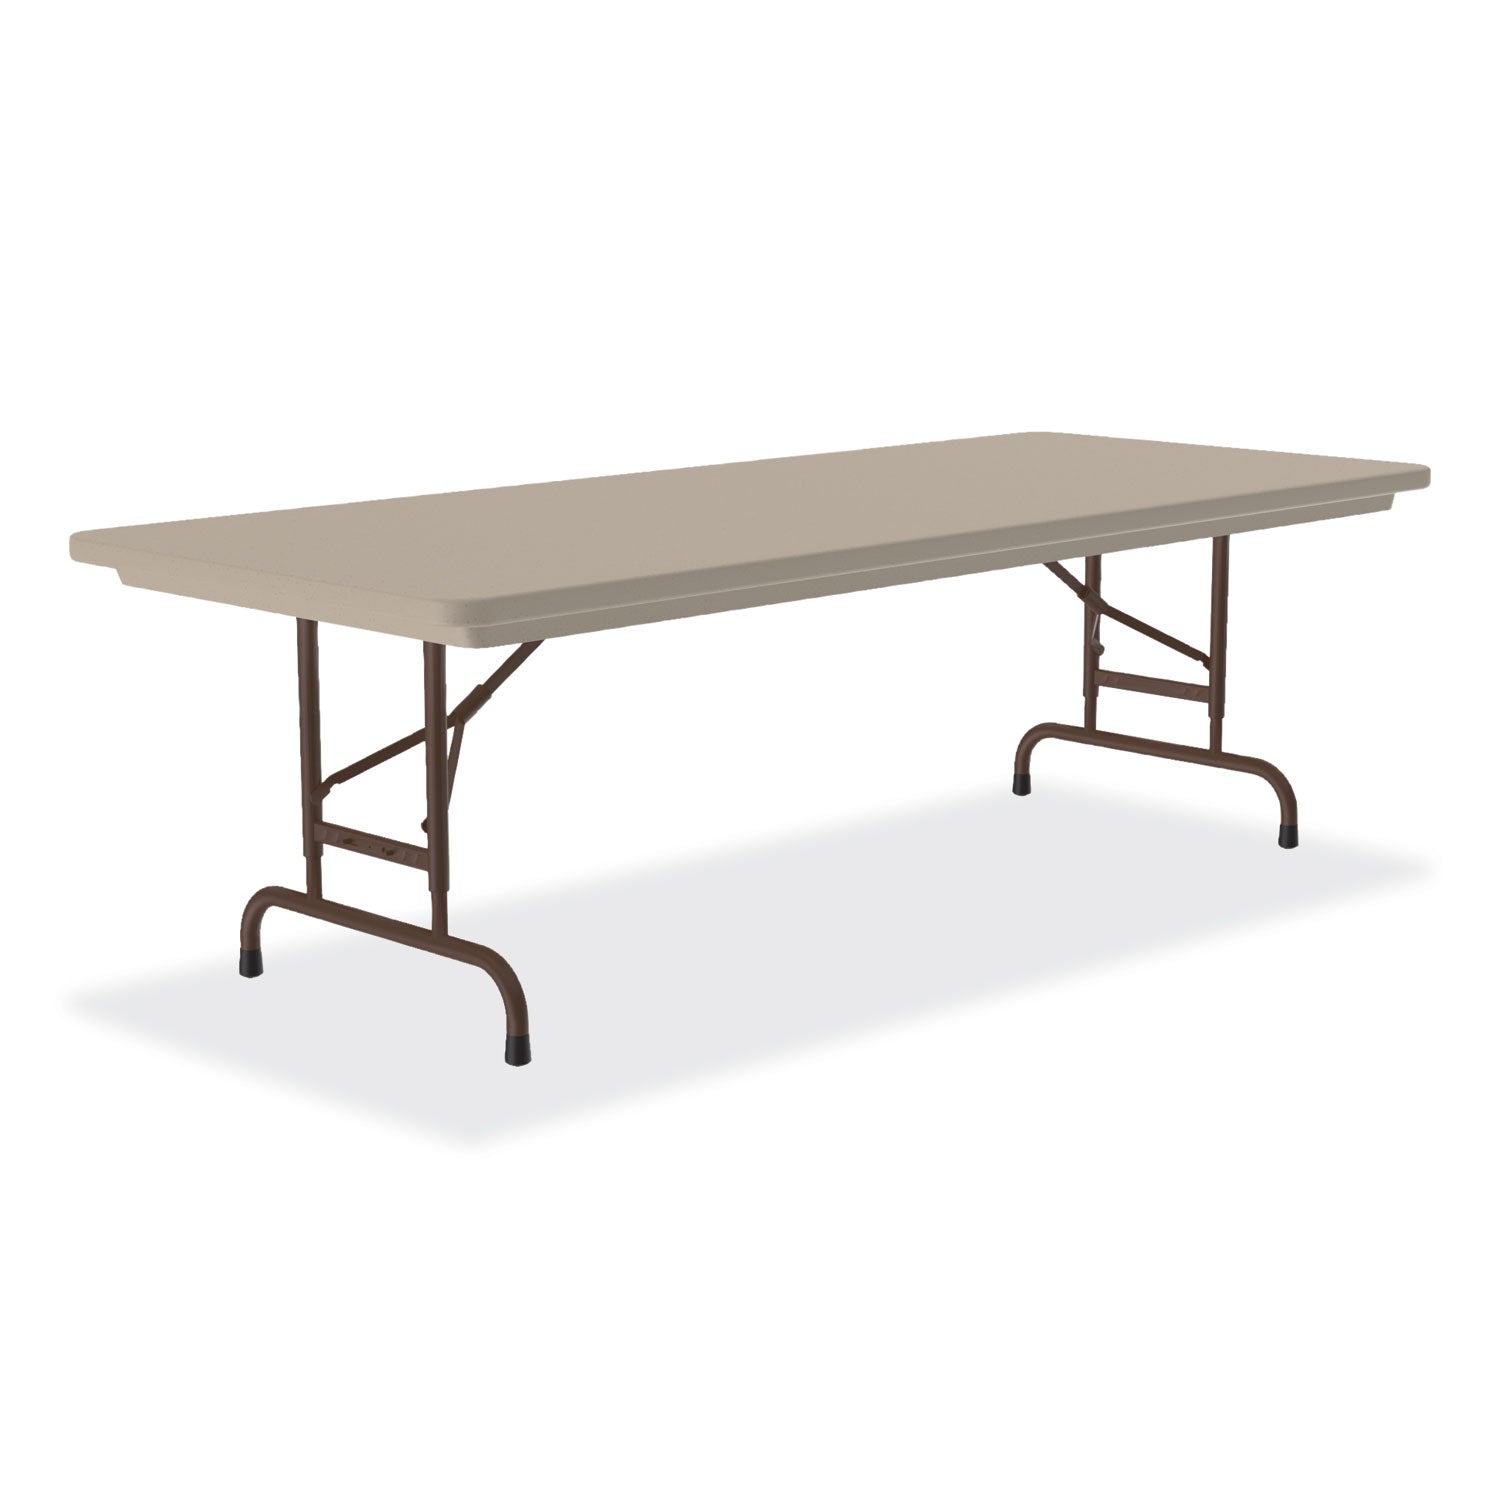 Adjustable Folding Tables, Rectangular, 72" x 30" x 22" to 32", Mocha Top, Brown Legs, 4/Pallet Flipcost Flipcost